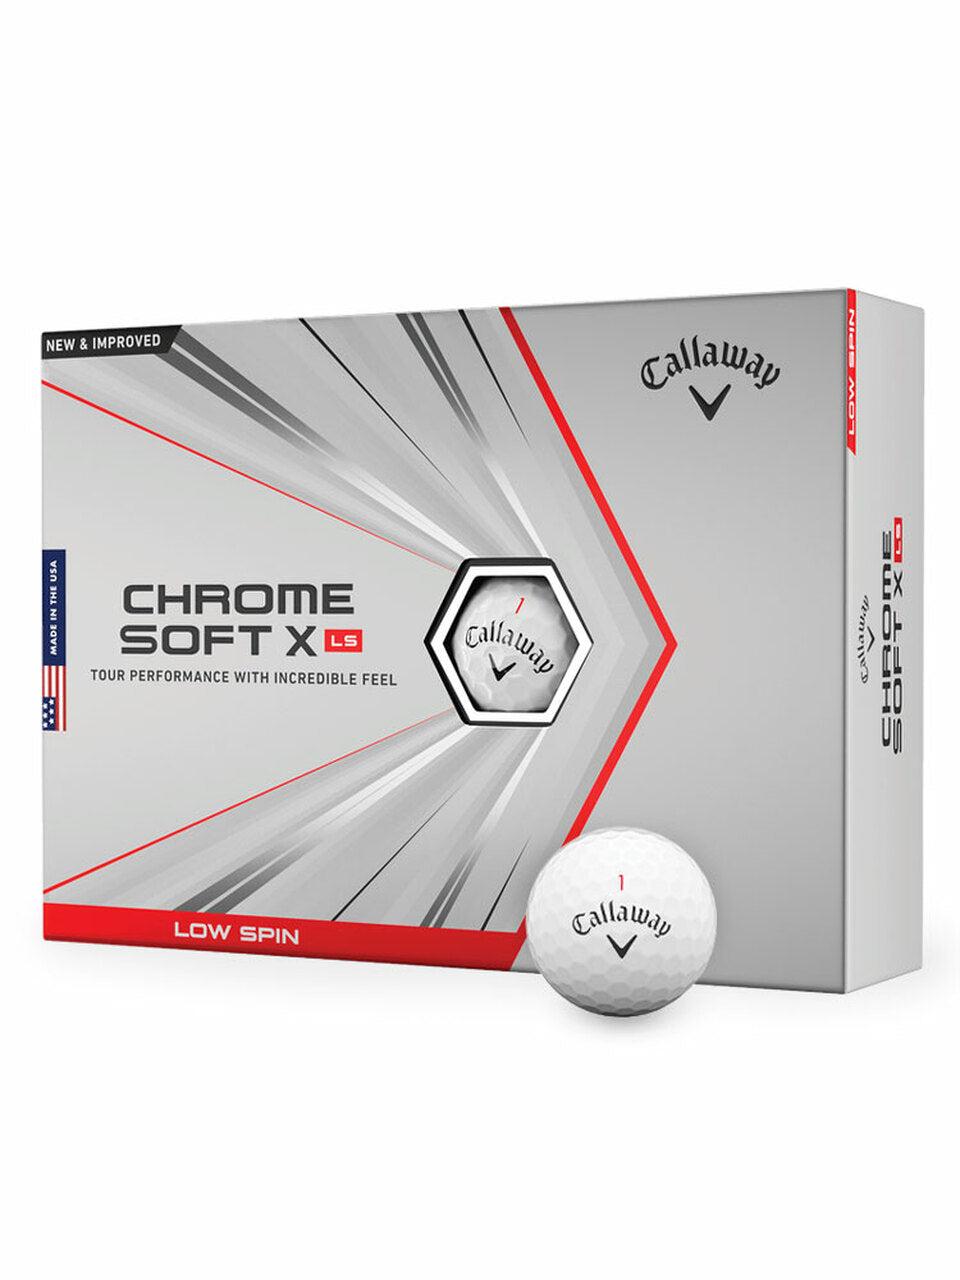 Callaway Chrome Soft X LS Golf Balls - 1 Dozen White